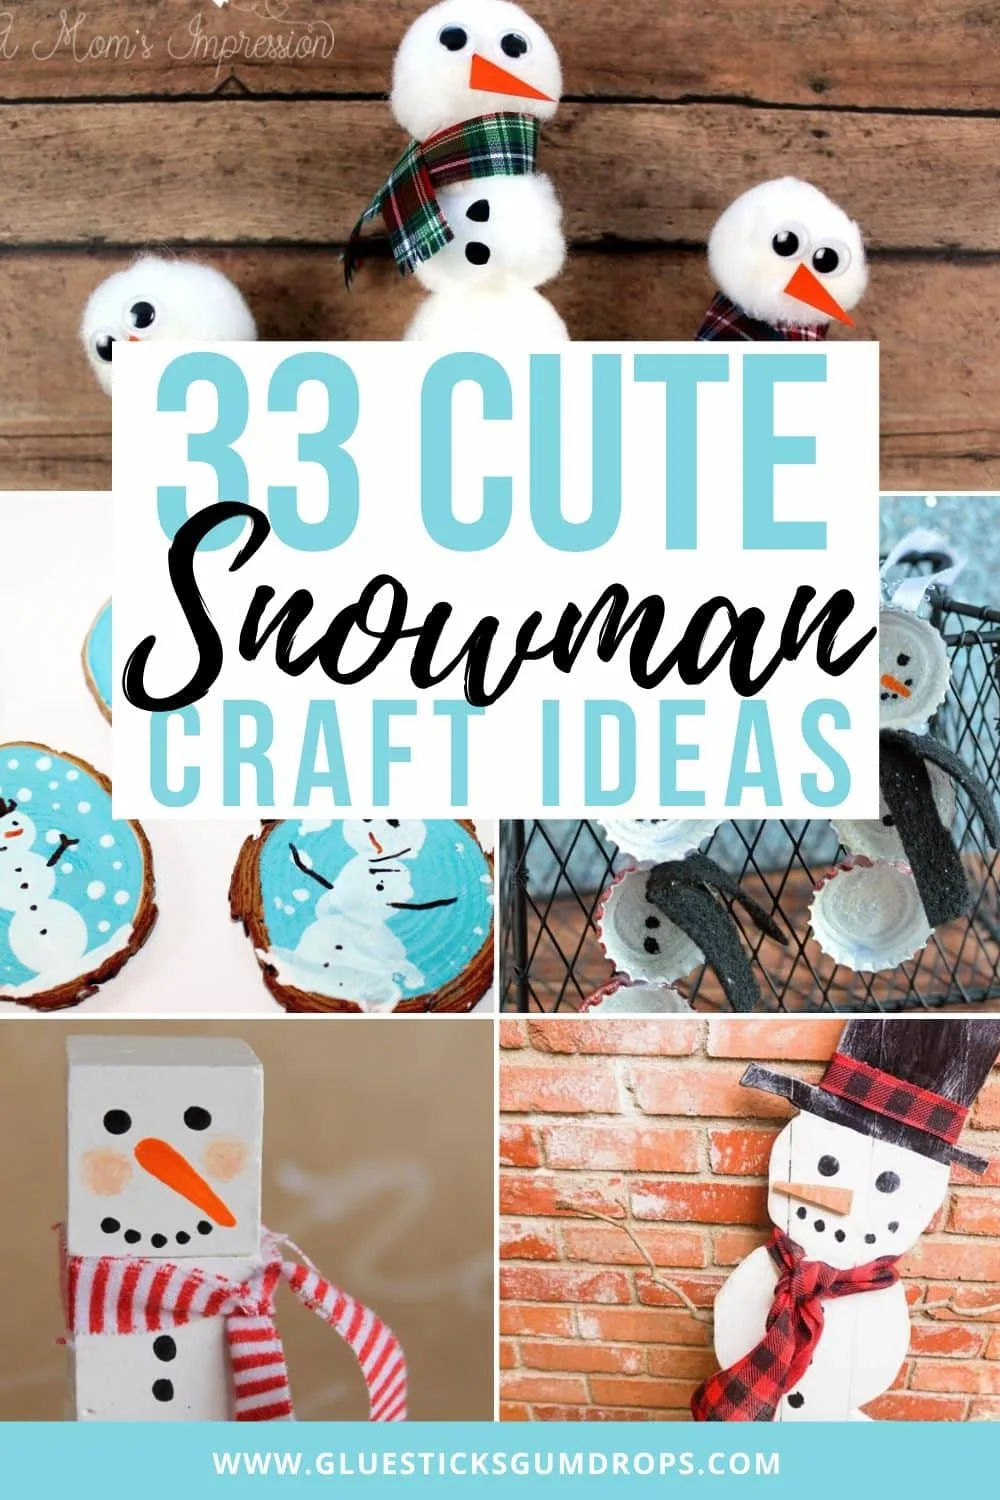 snowman craft ideas for kids